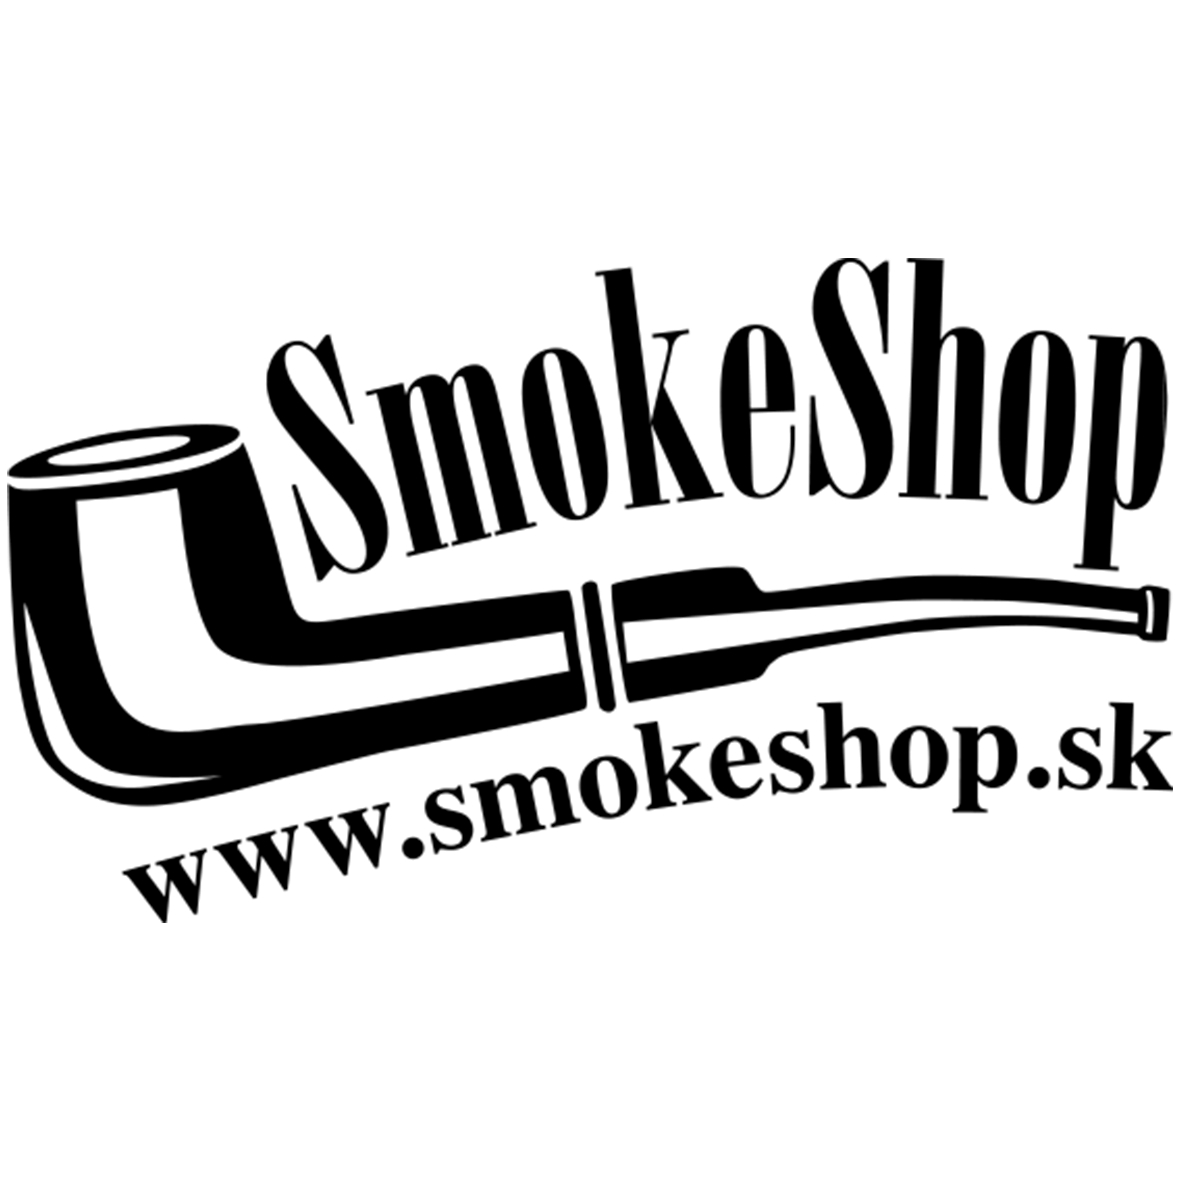 SmokeShop